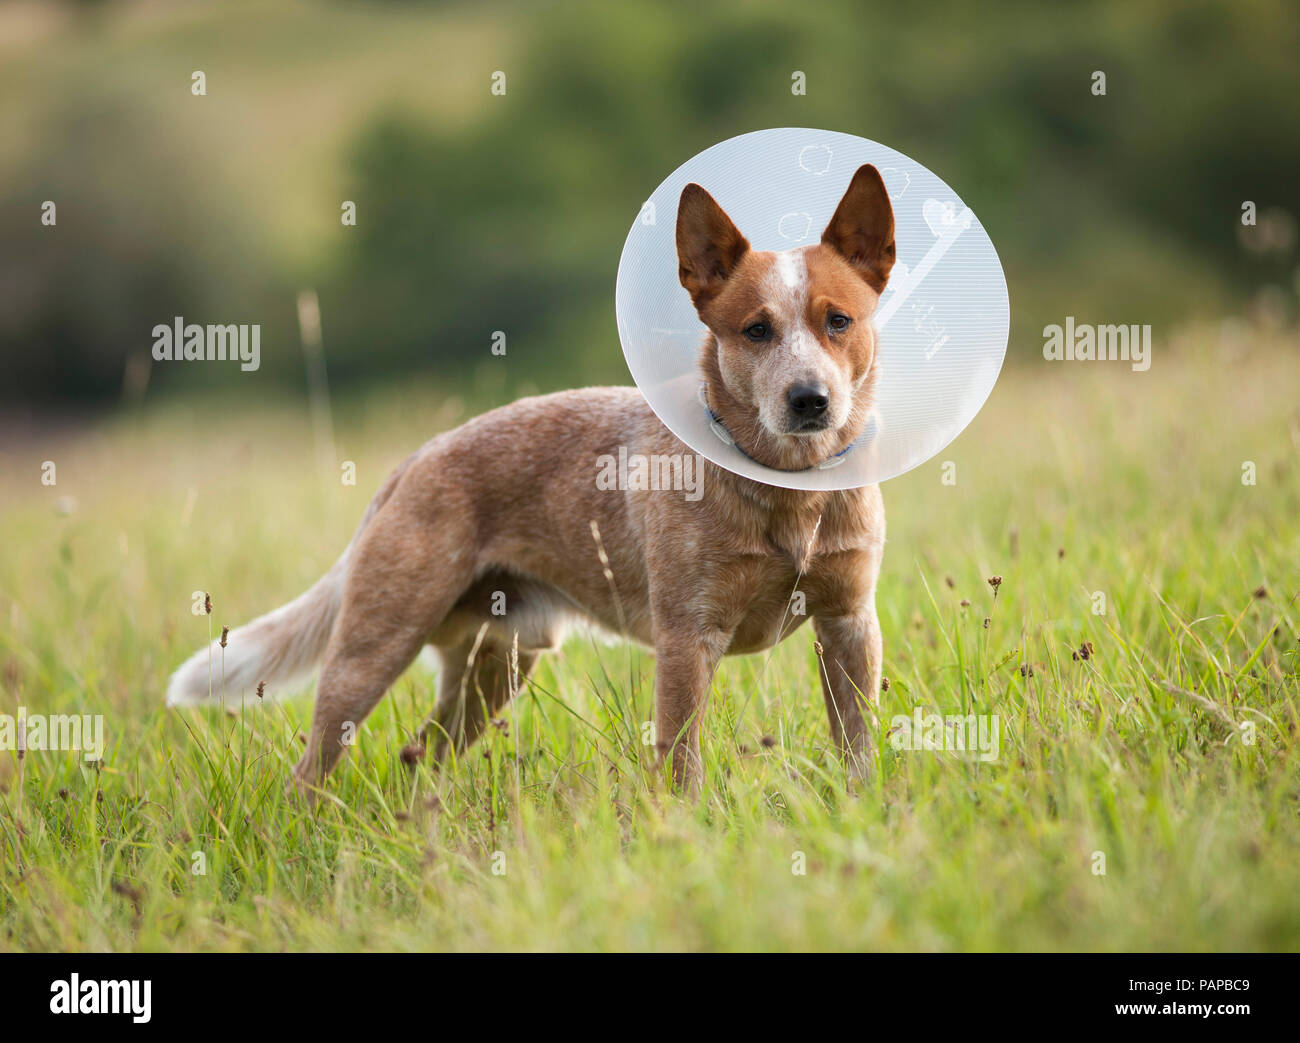 Australian Cattle Dog portant un collier élisabéthain pour empêcher l'animal de lécher ou mordre au cours de la guérison des plaies. Allemagne Banque D'Images